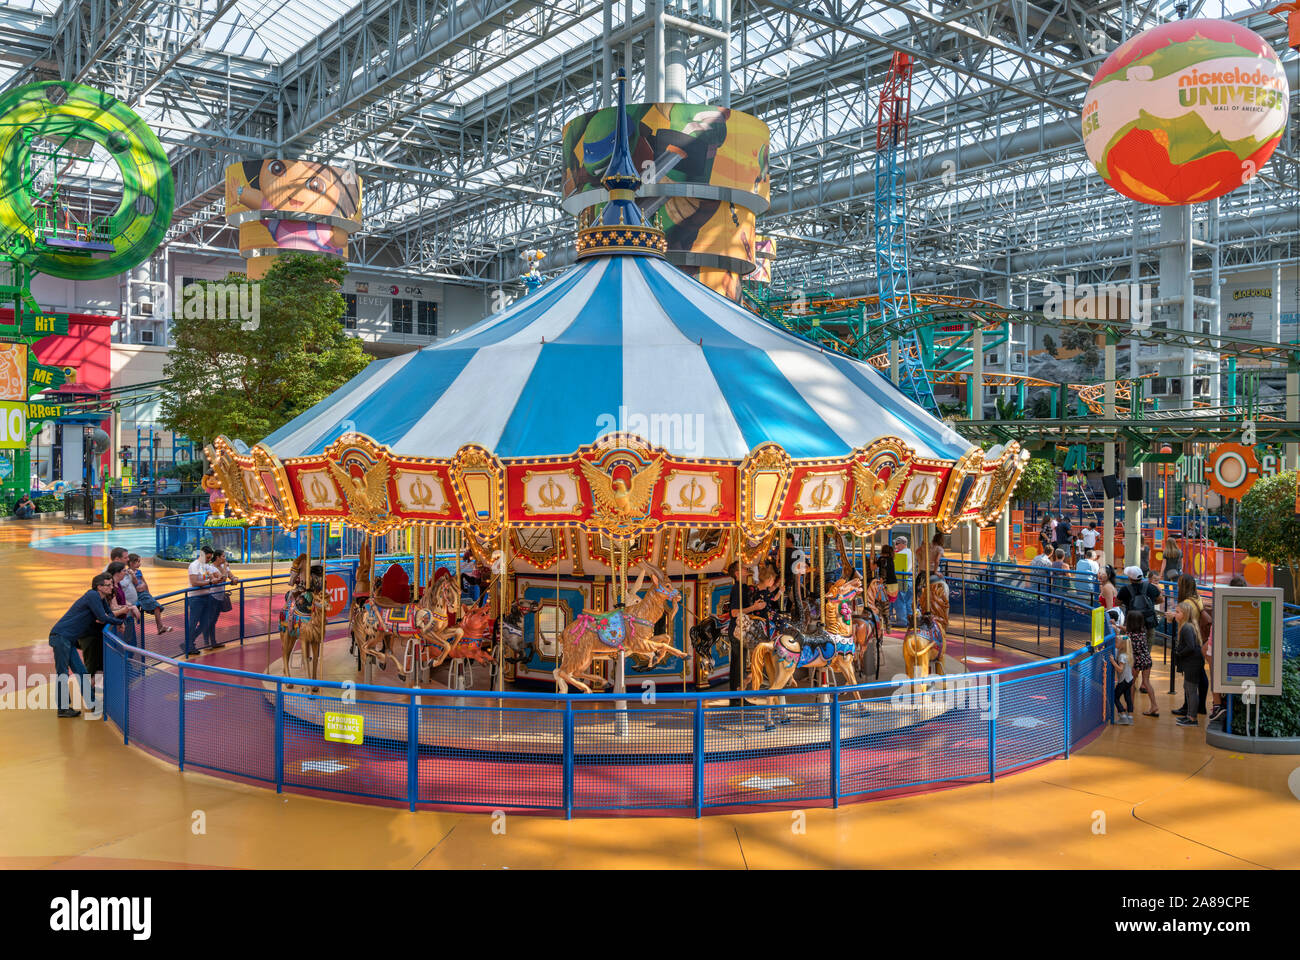 Giostra al Nickelodeon Universe indoor Amusement Park, il centro commerciale Mall of America, Bloomington, Minneapolis, Minnesota, Stati Uniti d'America Foto Stock